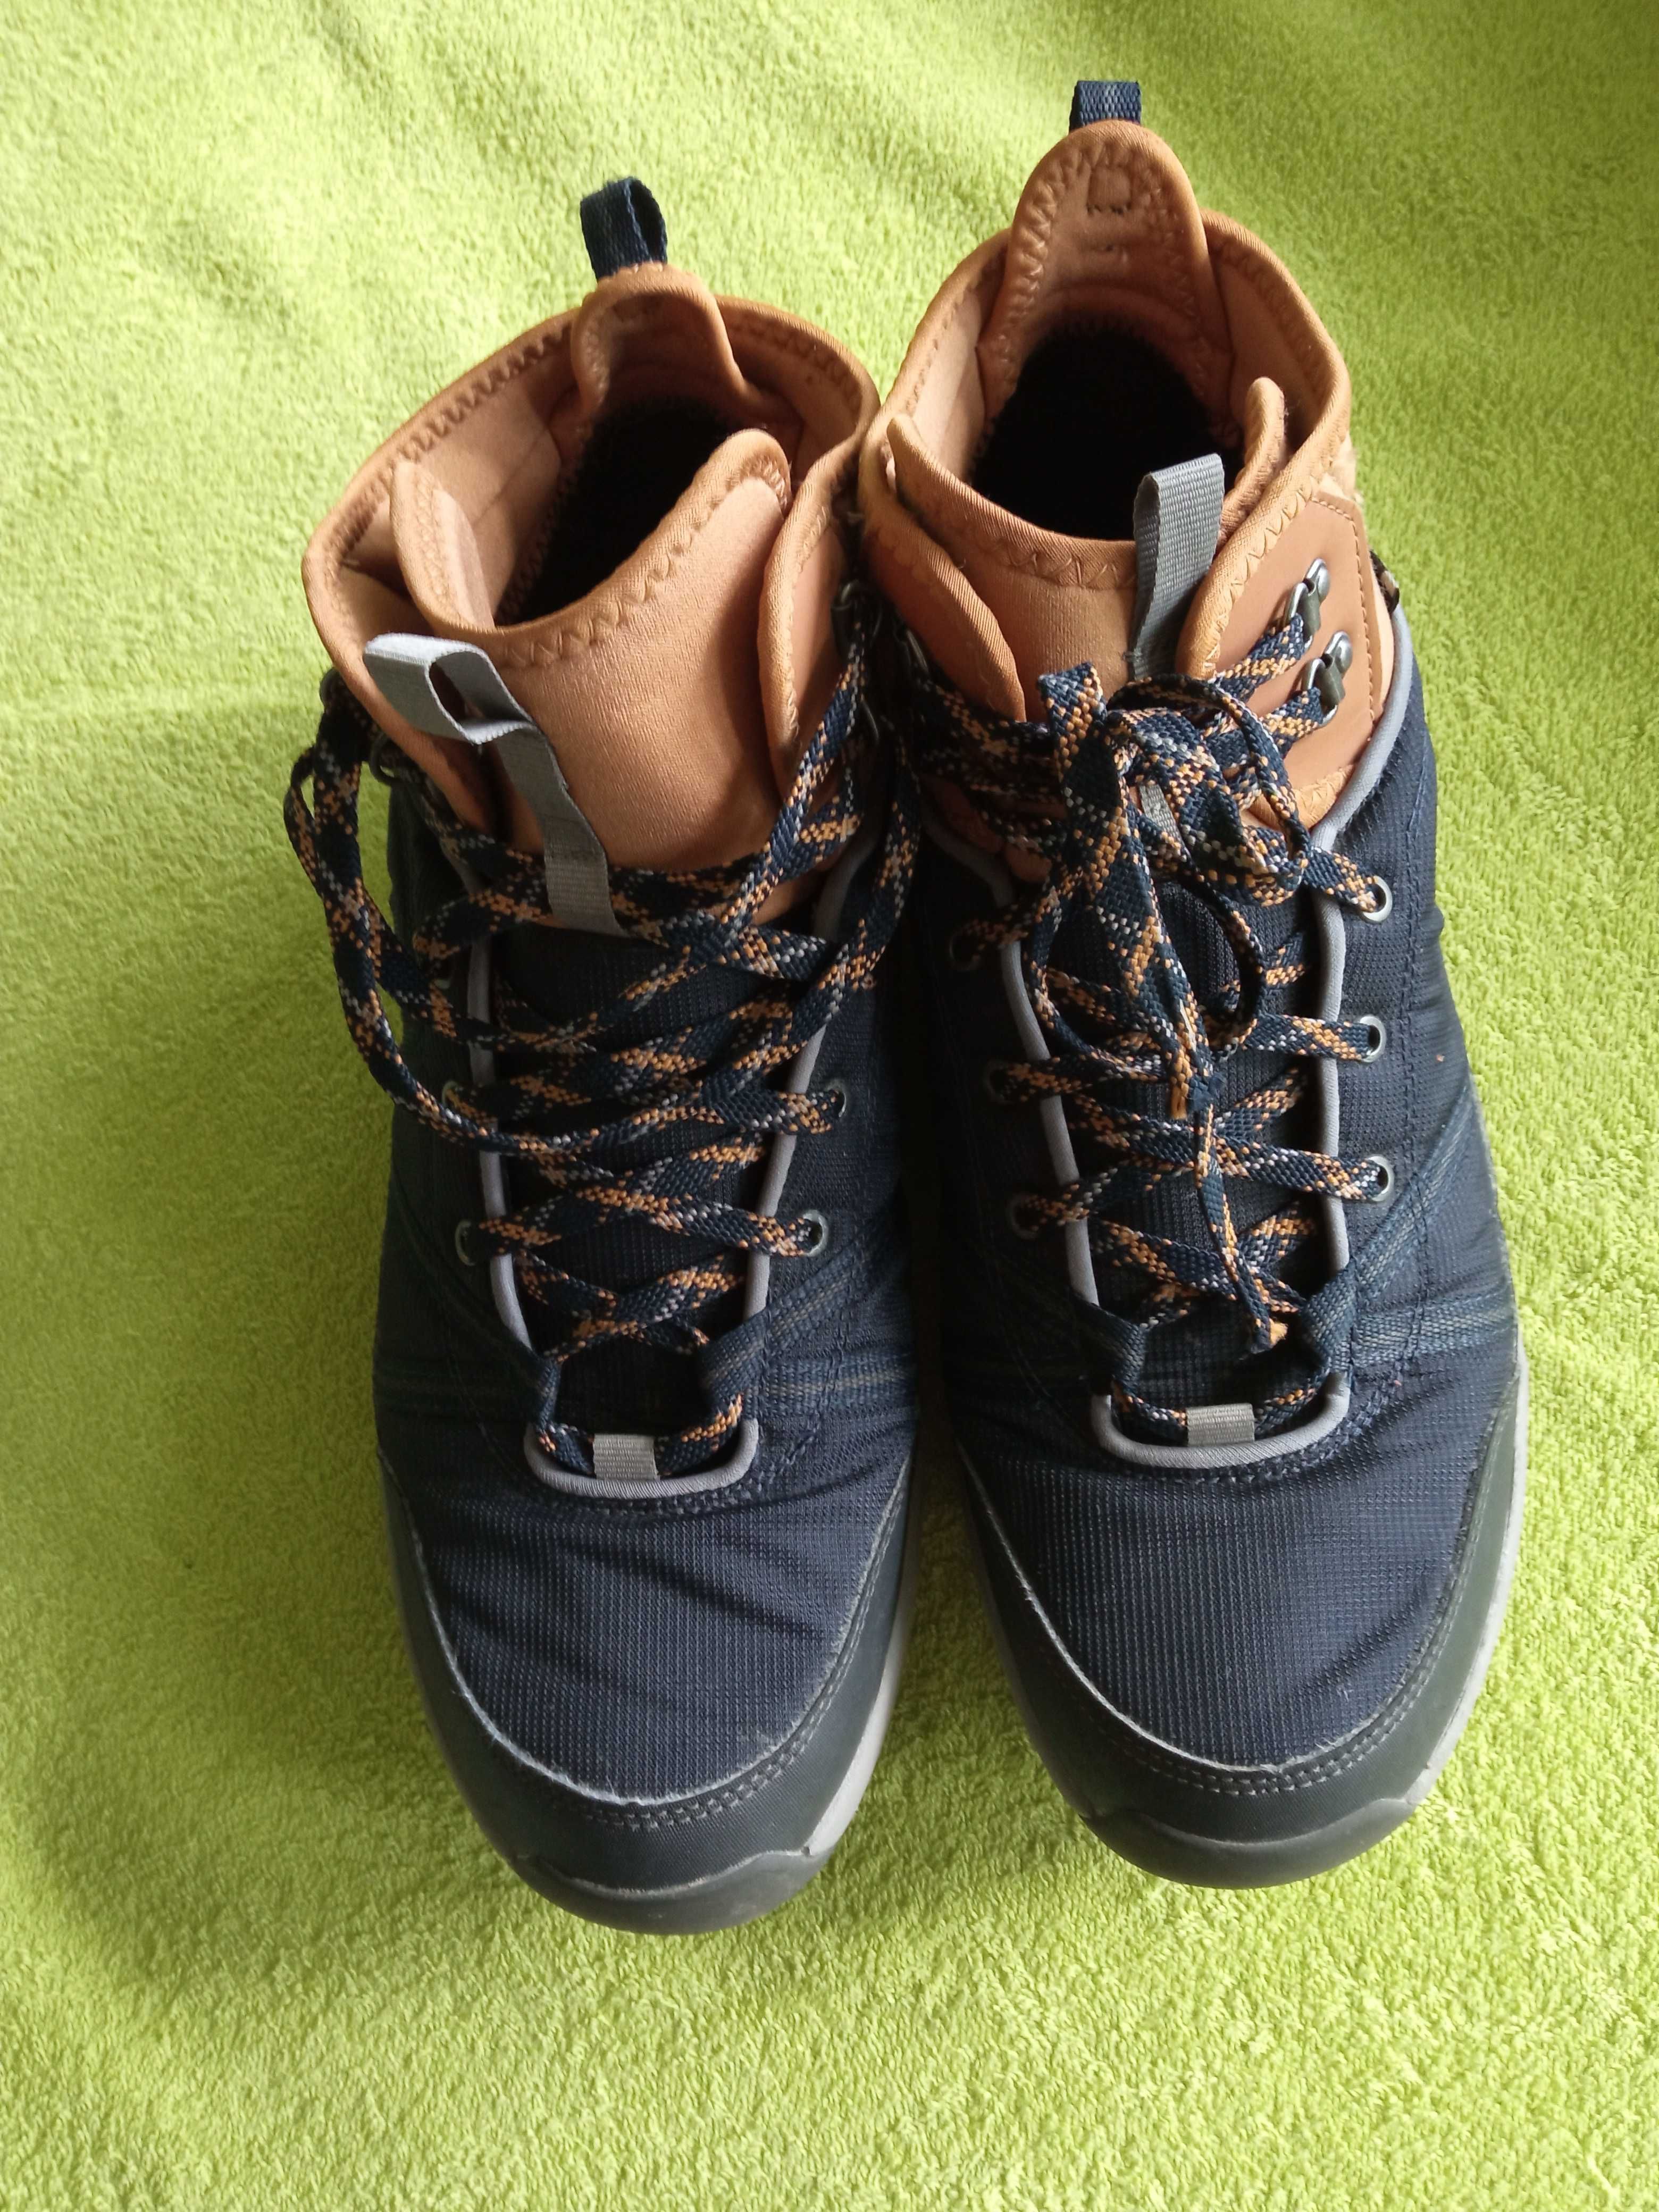 Непромокаеми обувки за преходи в сняг или дъжд, 45 р, сини